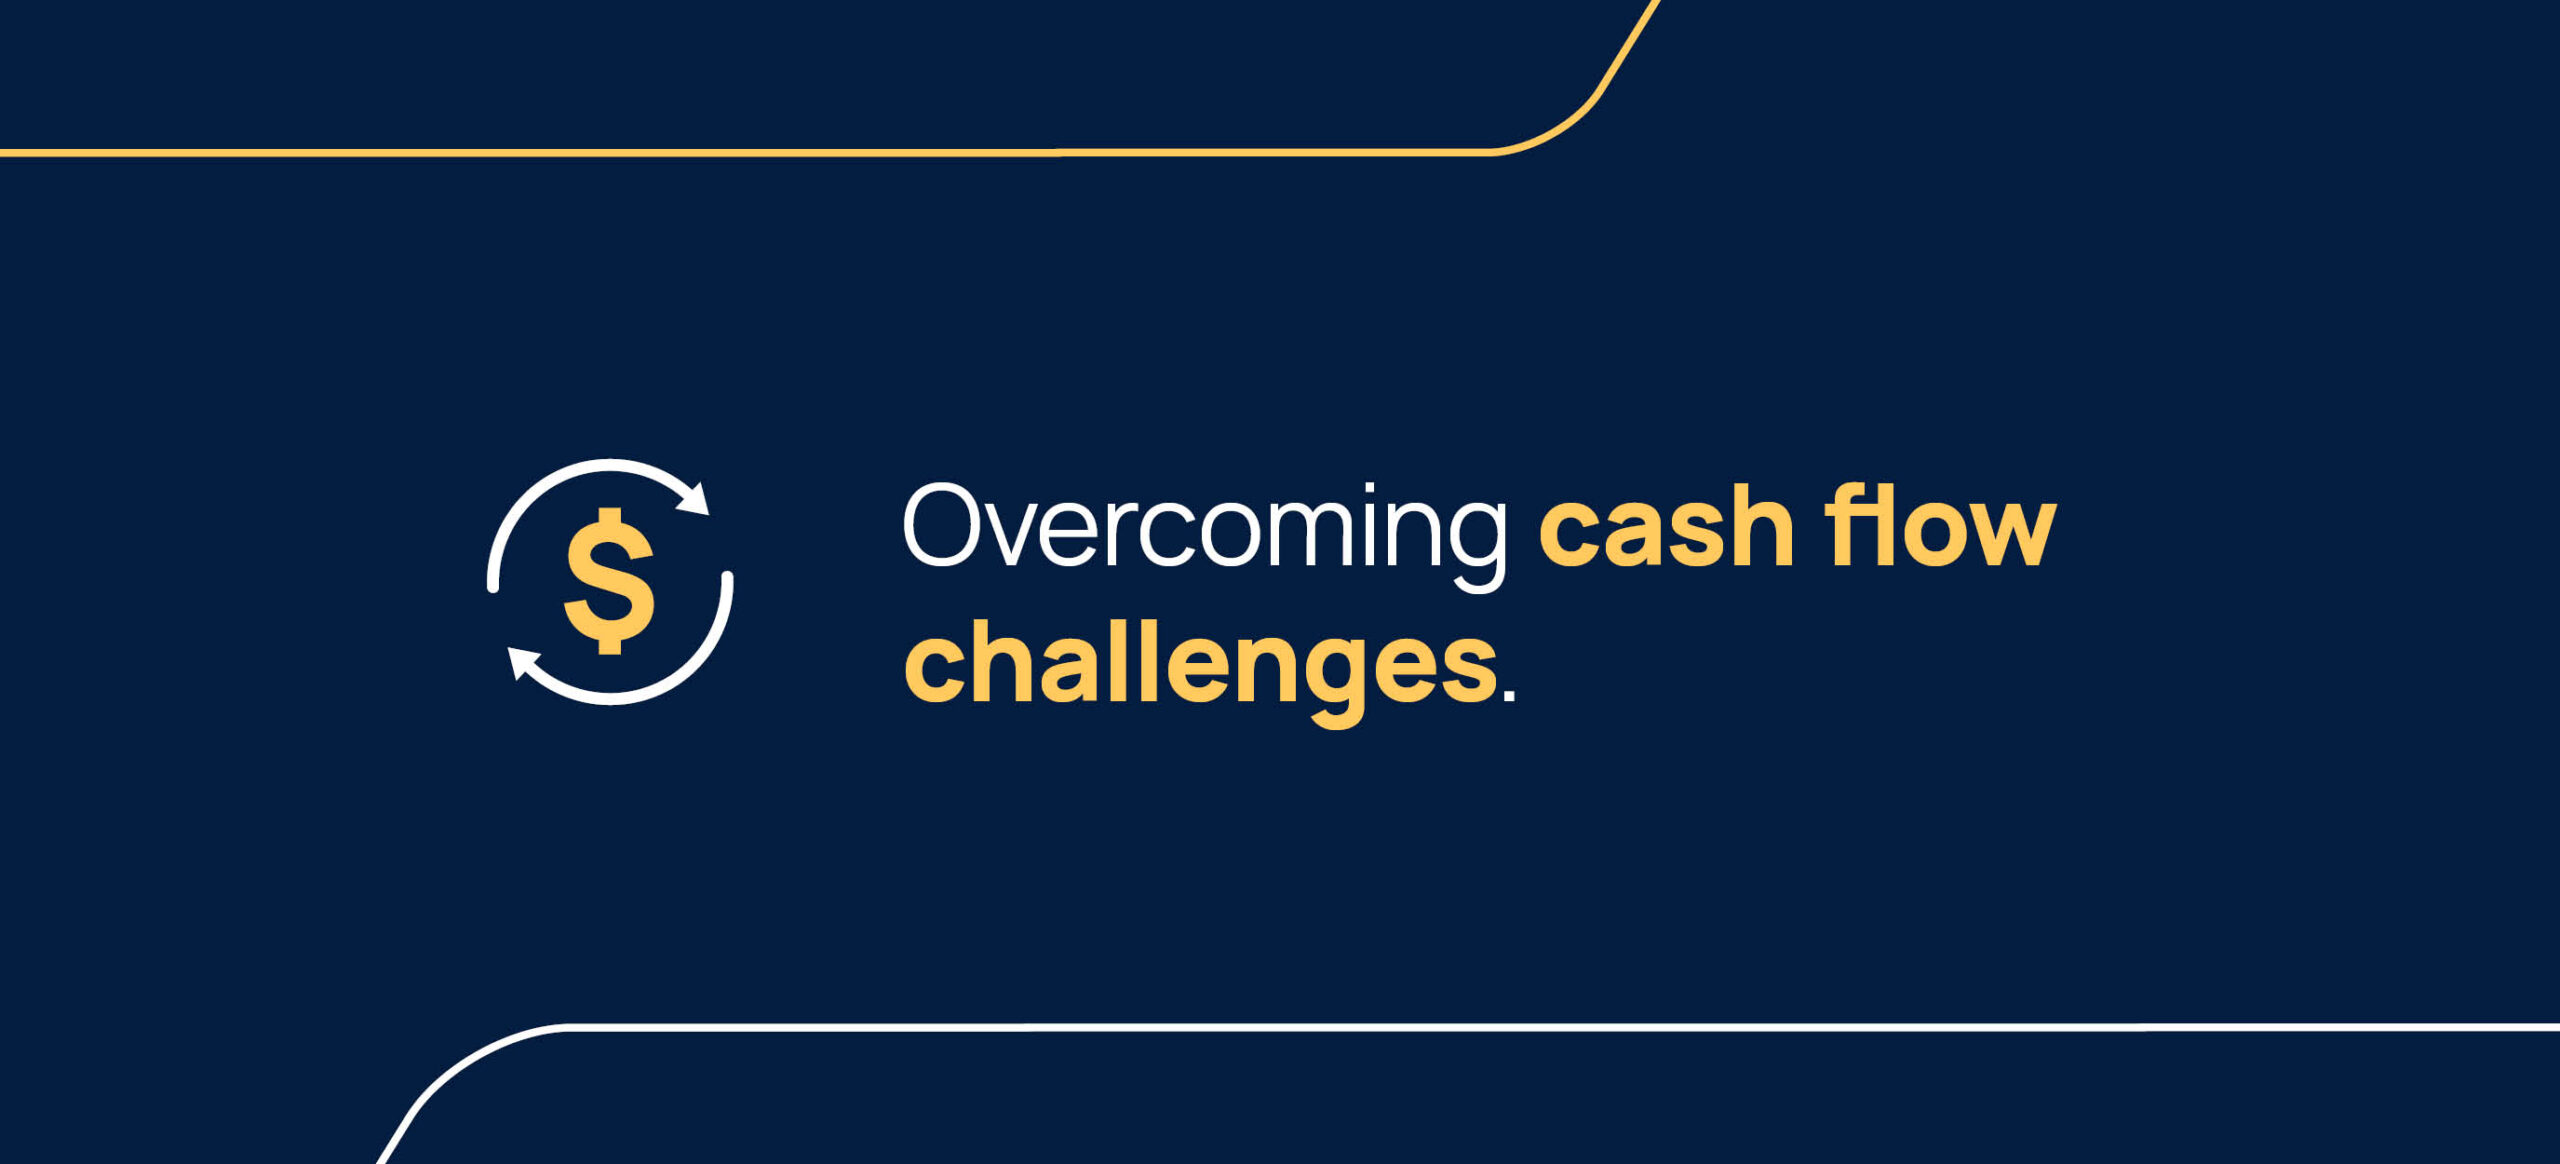 Overcoming cash flow challenges.